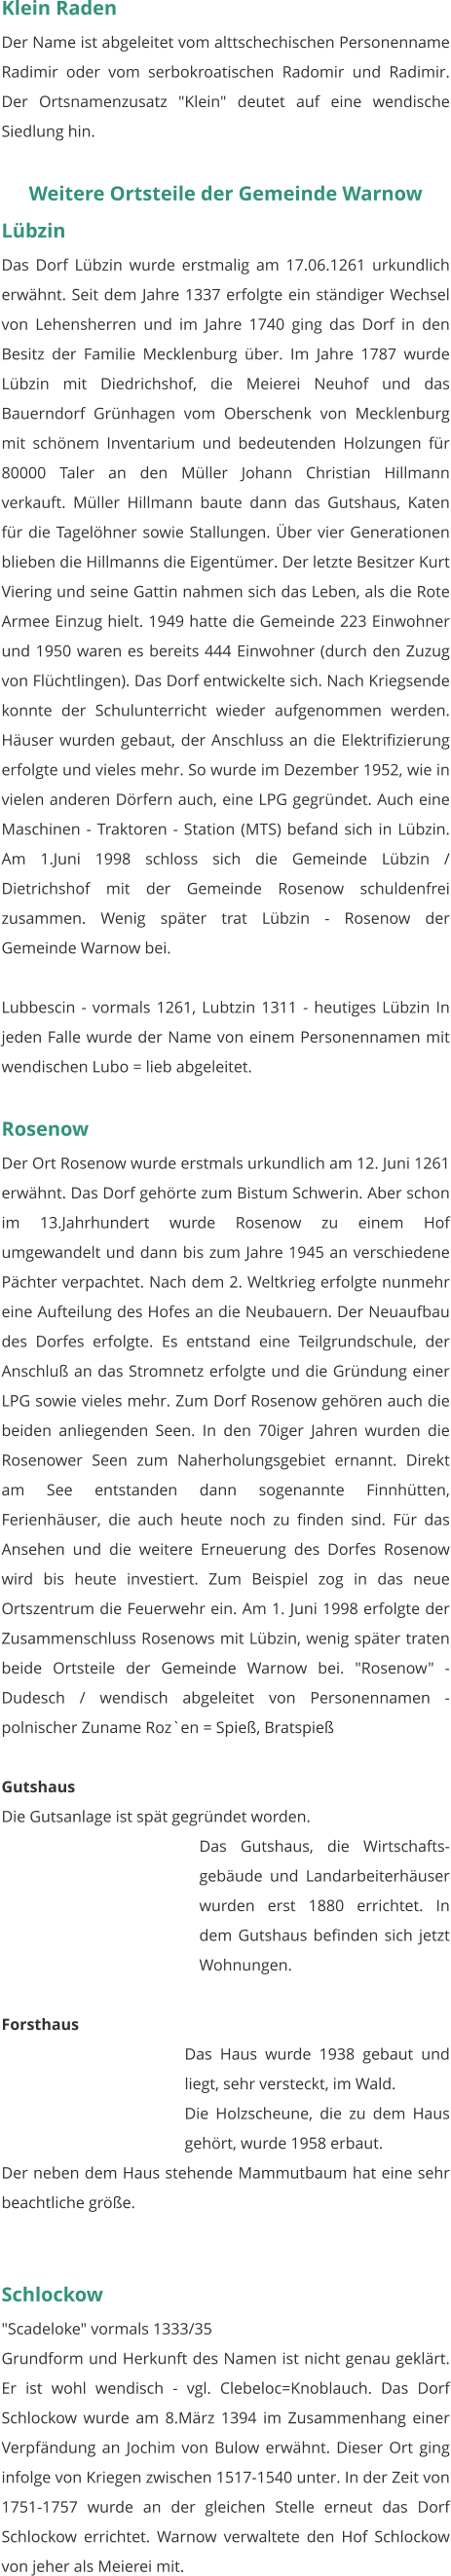 Klein Raden Der Name ist abgeleitet vom alttschechischen Personenname Radimir oder vom serbokroatischen Radomir und Radimir. Der Ortsnamenzusatz "Klein" deutet auf eine wendische Siedlung hin.   Weitere Ortsteile der Gemeinde Warnow Lübzin Das Dorf Lübzin wurde erstmalig am 17.06.1261 urkundlich erwähnt. Seit dem Jahre 1337 erfolgte ein ständiger Wechsel von Lehensherren und im Jahre 1740 ging das Dorf in den Besitz der Familie Mecklenburg über. Im Jahre 1787 wurde Lübzin mit Diedrichshof, die Meierei Neuhof und das Bauerndorf Grünhagen vom Oberschenk von Mecklenburg mit schönem Inventarium und bedeutenden Holzungen für 80000 Taler an den Müller Johann Christian Hillmann verkauft. Müller Hillmann baute dann das Gutshaus, Katen für die Tagelöhner sowie Stallungen. Über vier Generationen blieben die Hillmanns die Eigentümer. Der letzte Besitzer Kurt Viering und seine Gattin nahmen sich das Leben, als die Rote Armee Einzug hielt. 1949 hatte die Gemeinde 223 Einwohner und 1950 waren es bereits 444 Einwohner (durch den Zuzug von Flüchtlingen). Das Dorf entwickelte sich. Nach Kriegsende konnte der Schulunterricht wieder aufgenommen werden. Häuser wurden gebaut, der Anschluss an die Elektrifizierung erfolgte und vieles mehr. So wurde im Dezember 1952, wie in vielen anderen Dörfern auch, eine LPG gegründet. Auch eine Maschinen - Traktoren - Station (MTS) befand sich in Lübzin. Am 1.Juni 1998 schloss sich die Gemeinde Lübzin / Dietrichshof mit der Gemeinde Rosenow schuldenfrei zusammen. Wenig später trat Lübzin - Rosenow der Gemeinde Warnow bei.  Lubbescin - vormals 1261, Lubtzin 1311 - heutiges Lübzin In jeden Falle wurde der Name von einem Personennamen mit wendischen Lubo = lieb abgeleitet.   Rosenow Der Ort Rosenow wurde erstmals urkundlich am 12. Juni 1261 erwähnt. Das Dorf gehörte zum Bistum Schwerin. Aber schon im 13.Jahrhundert wurde Rosenow zu einem Hof umgewandelt und dann bis zum Jahre 1945 an verschiedene Pächter verpachtet. Nach dem 2. Weltkrieg erfolgte nunmehr eine Aufteilung des Hofes an die Neubauern. Der Neuaufbau des Dorfes erfolgte. Es entstand eine Teilgrundschule, der Anschluß an das Stromnetz erfolgte und die Gründung einer LPG sowie vieles mehr. Zum Dorf Rosenow gehören auch die beiden anliegenden Seen. In den 70iger Jahren wurden die Rosenower Seen zum Naherholungsgebiet ernannt. Direkt am See entstanden dann sogenannte Finnhütten, Ferienhäuser, die auch heute noch zu finden sind. Für das Ansehen und die weitere Erneuerung des Dorfes Rosenow wird bis heute investiert. Zum Beispiel zog in das neue Ortszentrum die Feuerwehr ein. Am 1. Juni 1998 erfolgte der Zusammenschluss Rosenows mit Lübzin, wenig später traten beide Ortsteile der Gemeinde Warnow bei. "Rosenow" - Dudesch / wendisch abgeleitet von Personennamen - polnischer Zuname Roz`en = Spieß, Bratspieß   Gutshaus Die Gutsanlage ist spät gegründet worden. Das Gutshaus, die Wirtschafts-gebäude und Landarbeiterhäuser wurden erst 1880 errichtet. In dem Gutshaus befinden sich jetzt Wohnungen.  Forsthaus Das Haus wurde 1938 gebaut und liegt, sehr versteckt, im Wald. Die Holzscheune, die zu dem Haus gehört, wurde 1958 erbaut. Der neben dem Haus stehende Mammutbaum hat eine sehr beachtliche größe.    Schlockow "Scadeloke" vormals 1333/35 Grundform und Herkunft des Namen ist nicht genau geklärt. Er ist wohl wendisch - vgl. Clebeloc=Knoblauch. Das Dorf Schlockow wurde am 8.März 1394 im Zusammenhang einer Verpfändung an Jochim von Bulow erwähnt. Dieser Ort ging infolge von Kriegen zwischen 1517-1540 unter. In der Zeit von 1751-1757 wurde an der gleichen Stelle erneut das Dorf Schlockow errichtet. Warnow verwaltete den Hof Schlockow von jeher als Meierei mit.